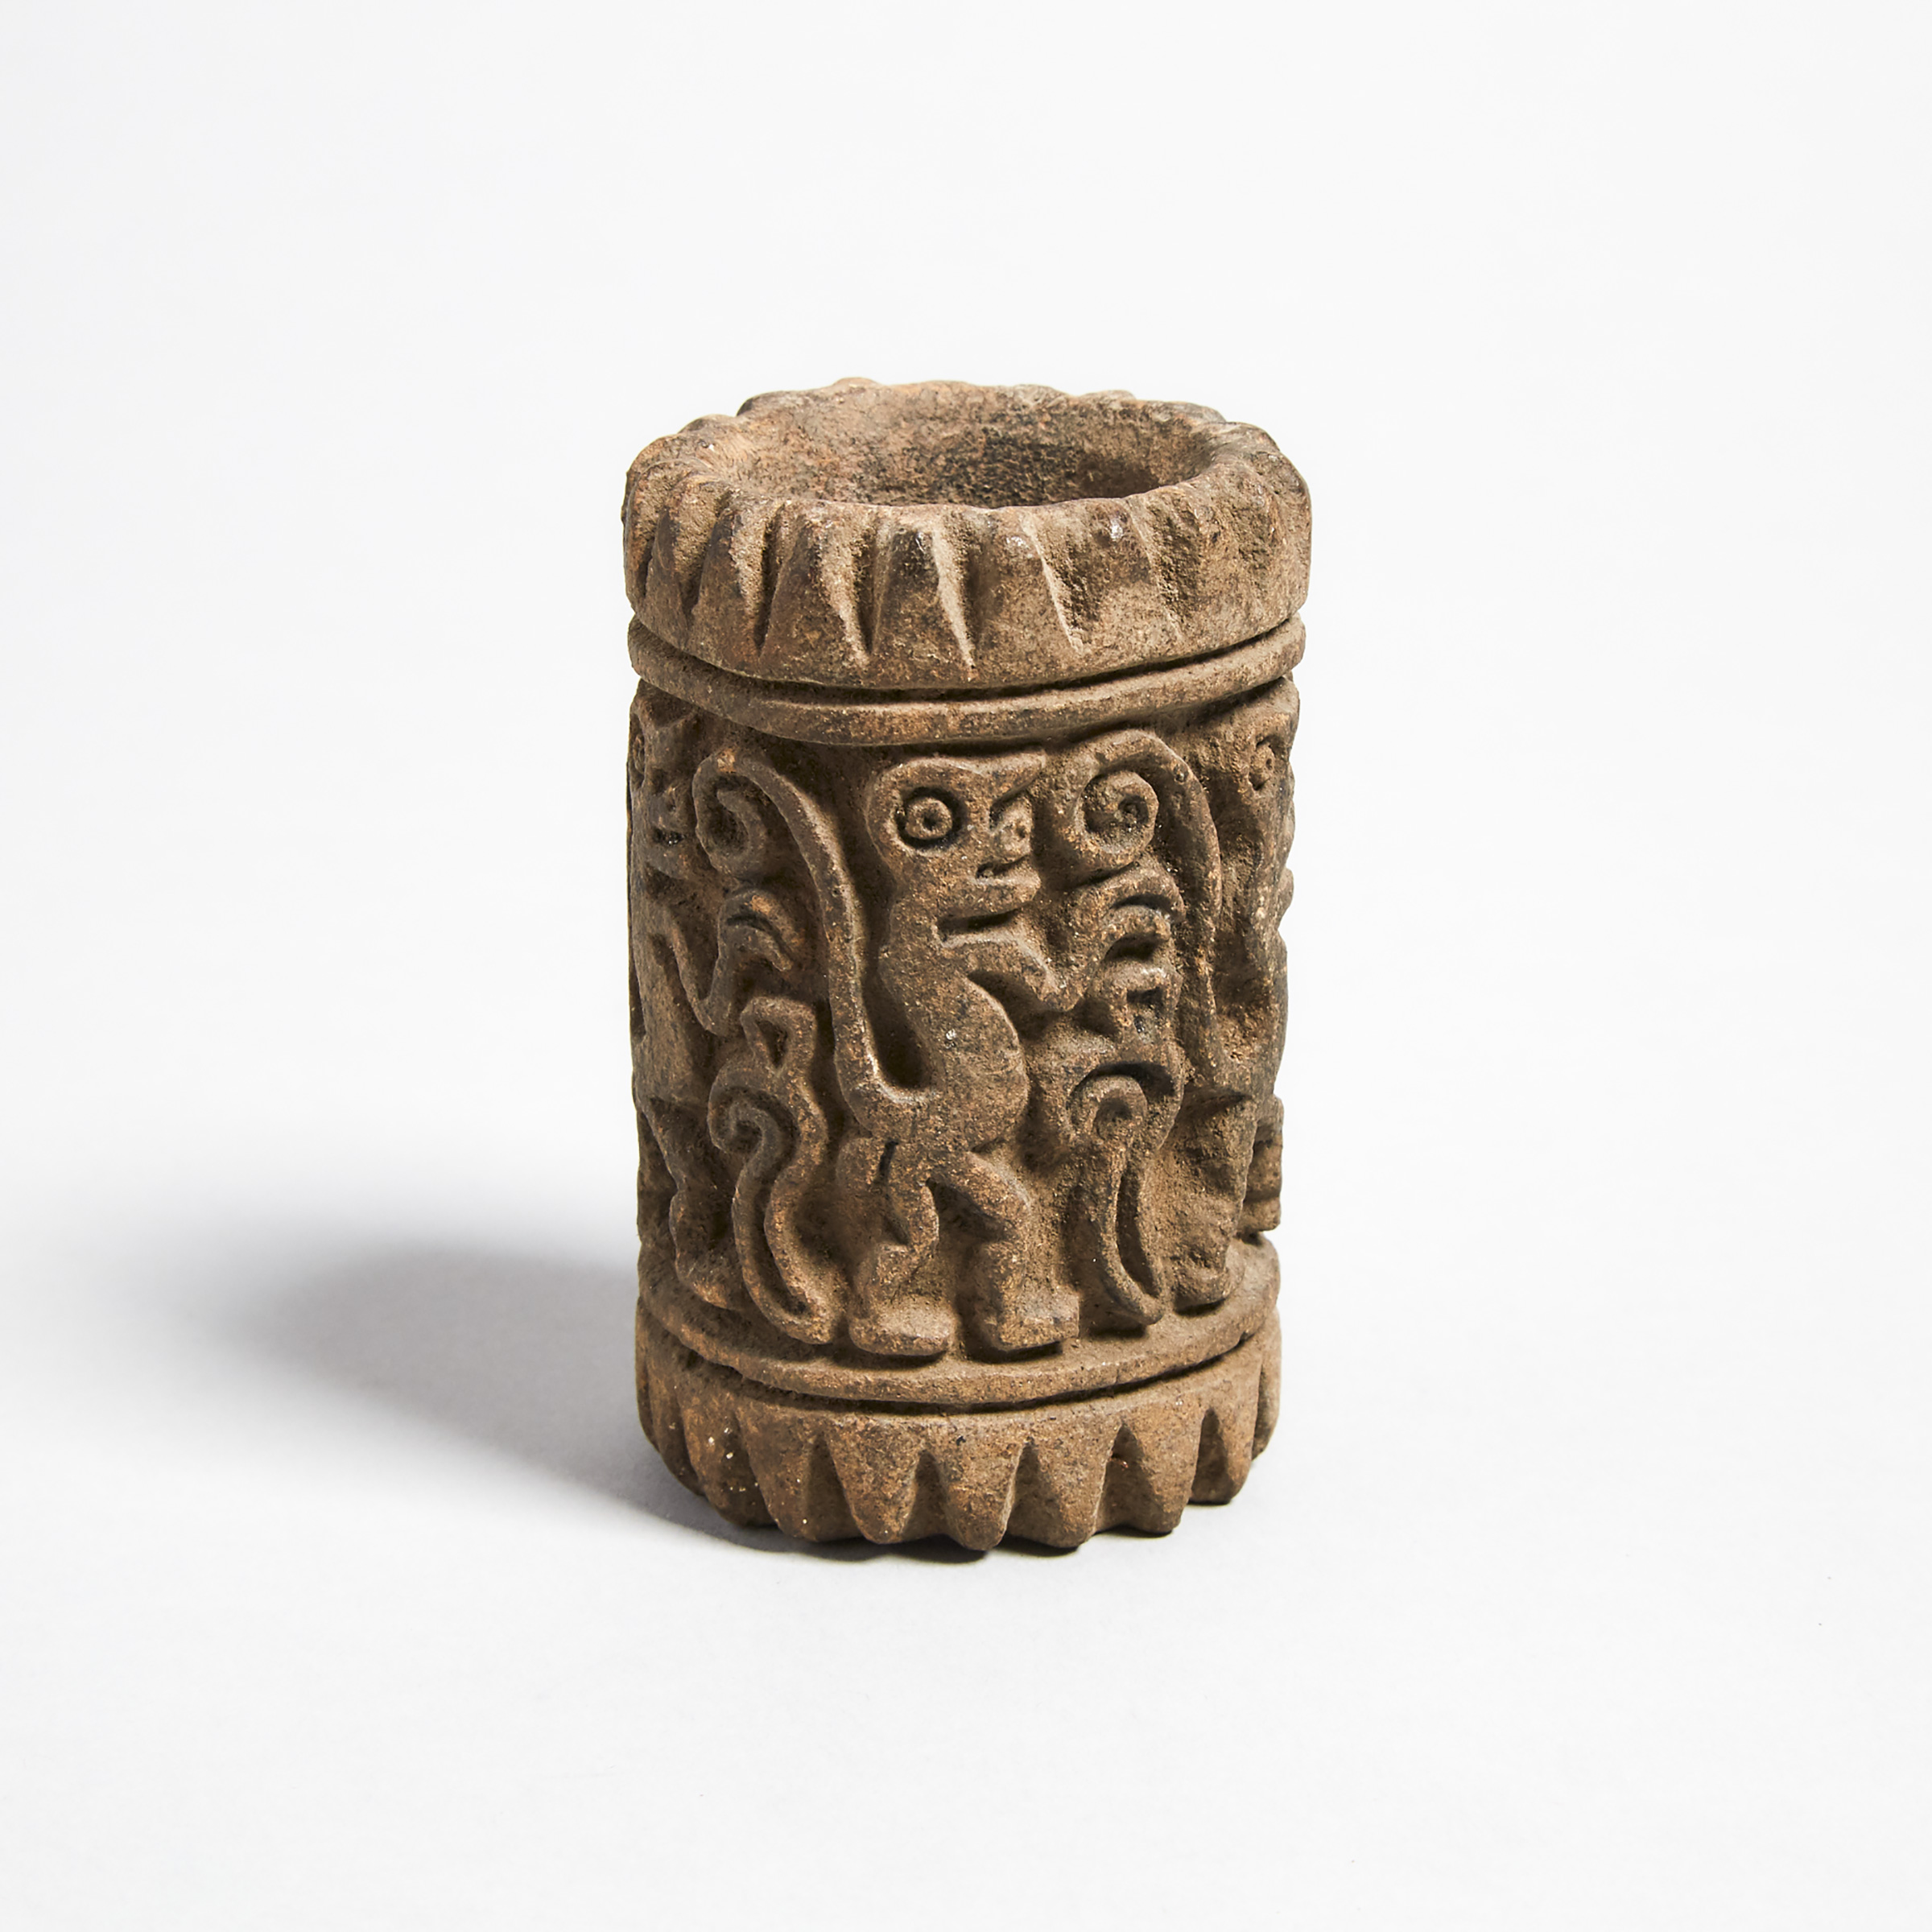 Manteno Pottery Roller Stamp with Monkey Parade, Ecuador 850-1600 A.D.